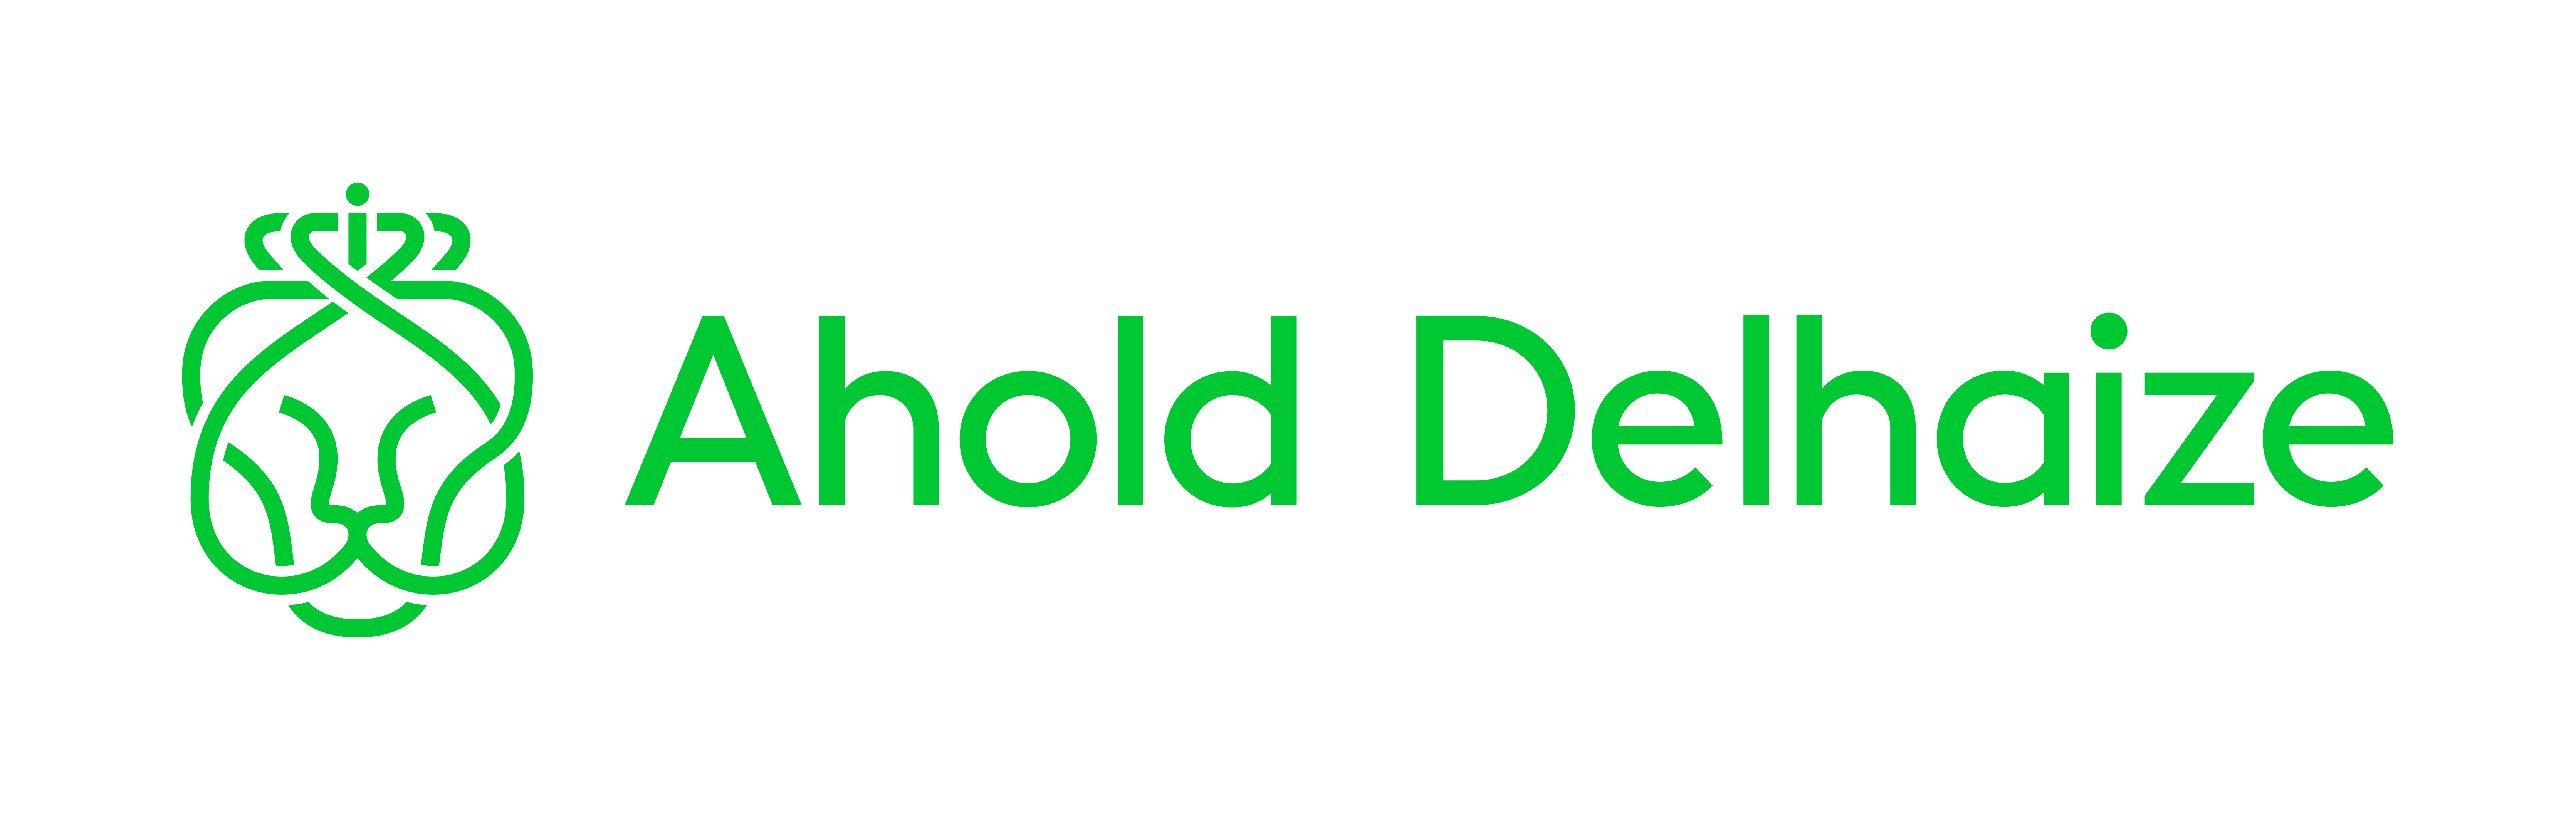 Delhaize Ahold Logo - Koninklijke Ahold Delhaize NV